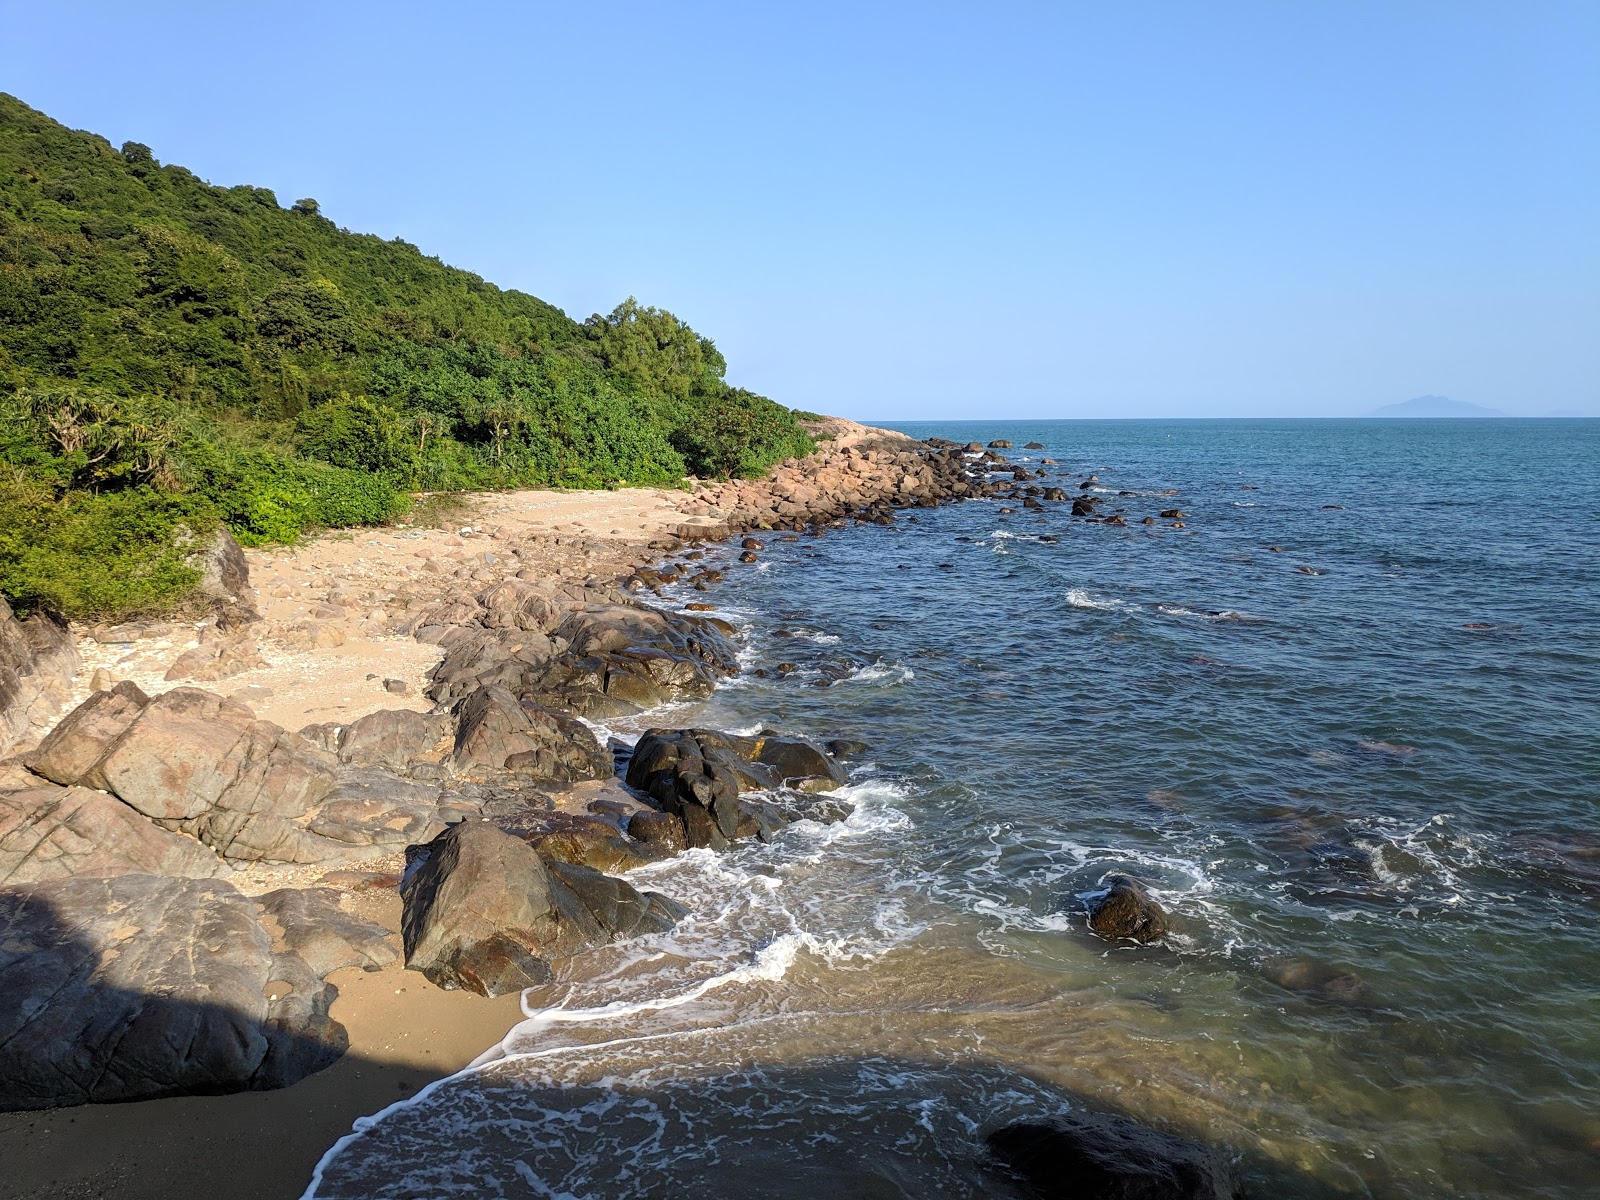 Fotografija Ghenh Bang Beach nahaja se v naravnem okolju